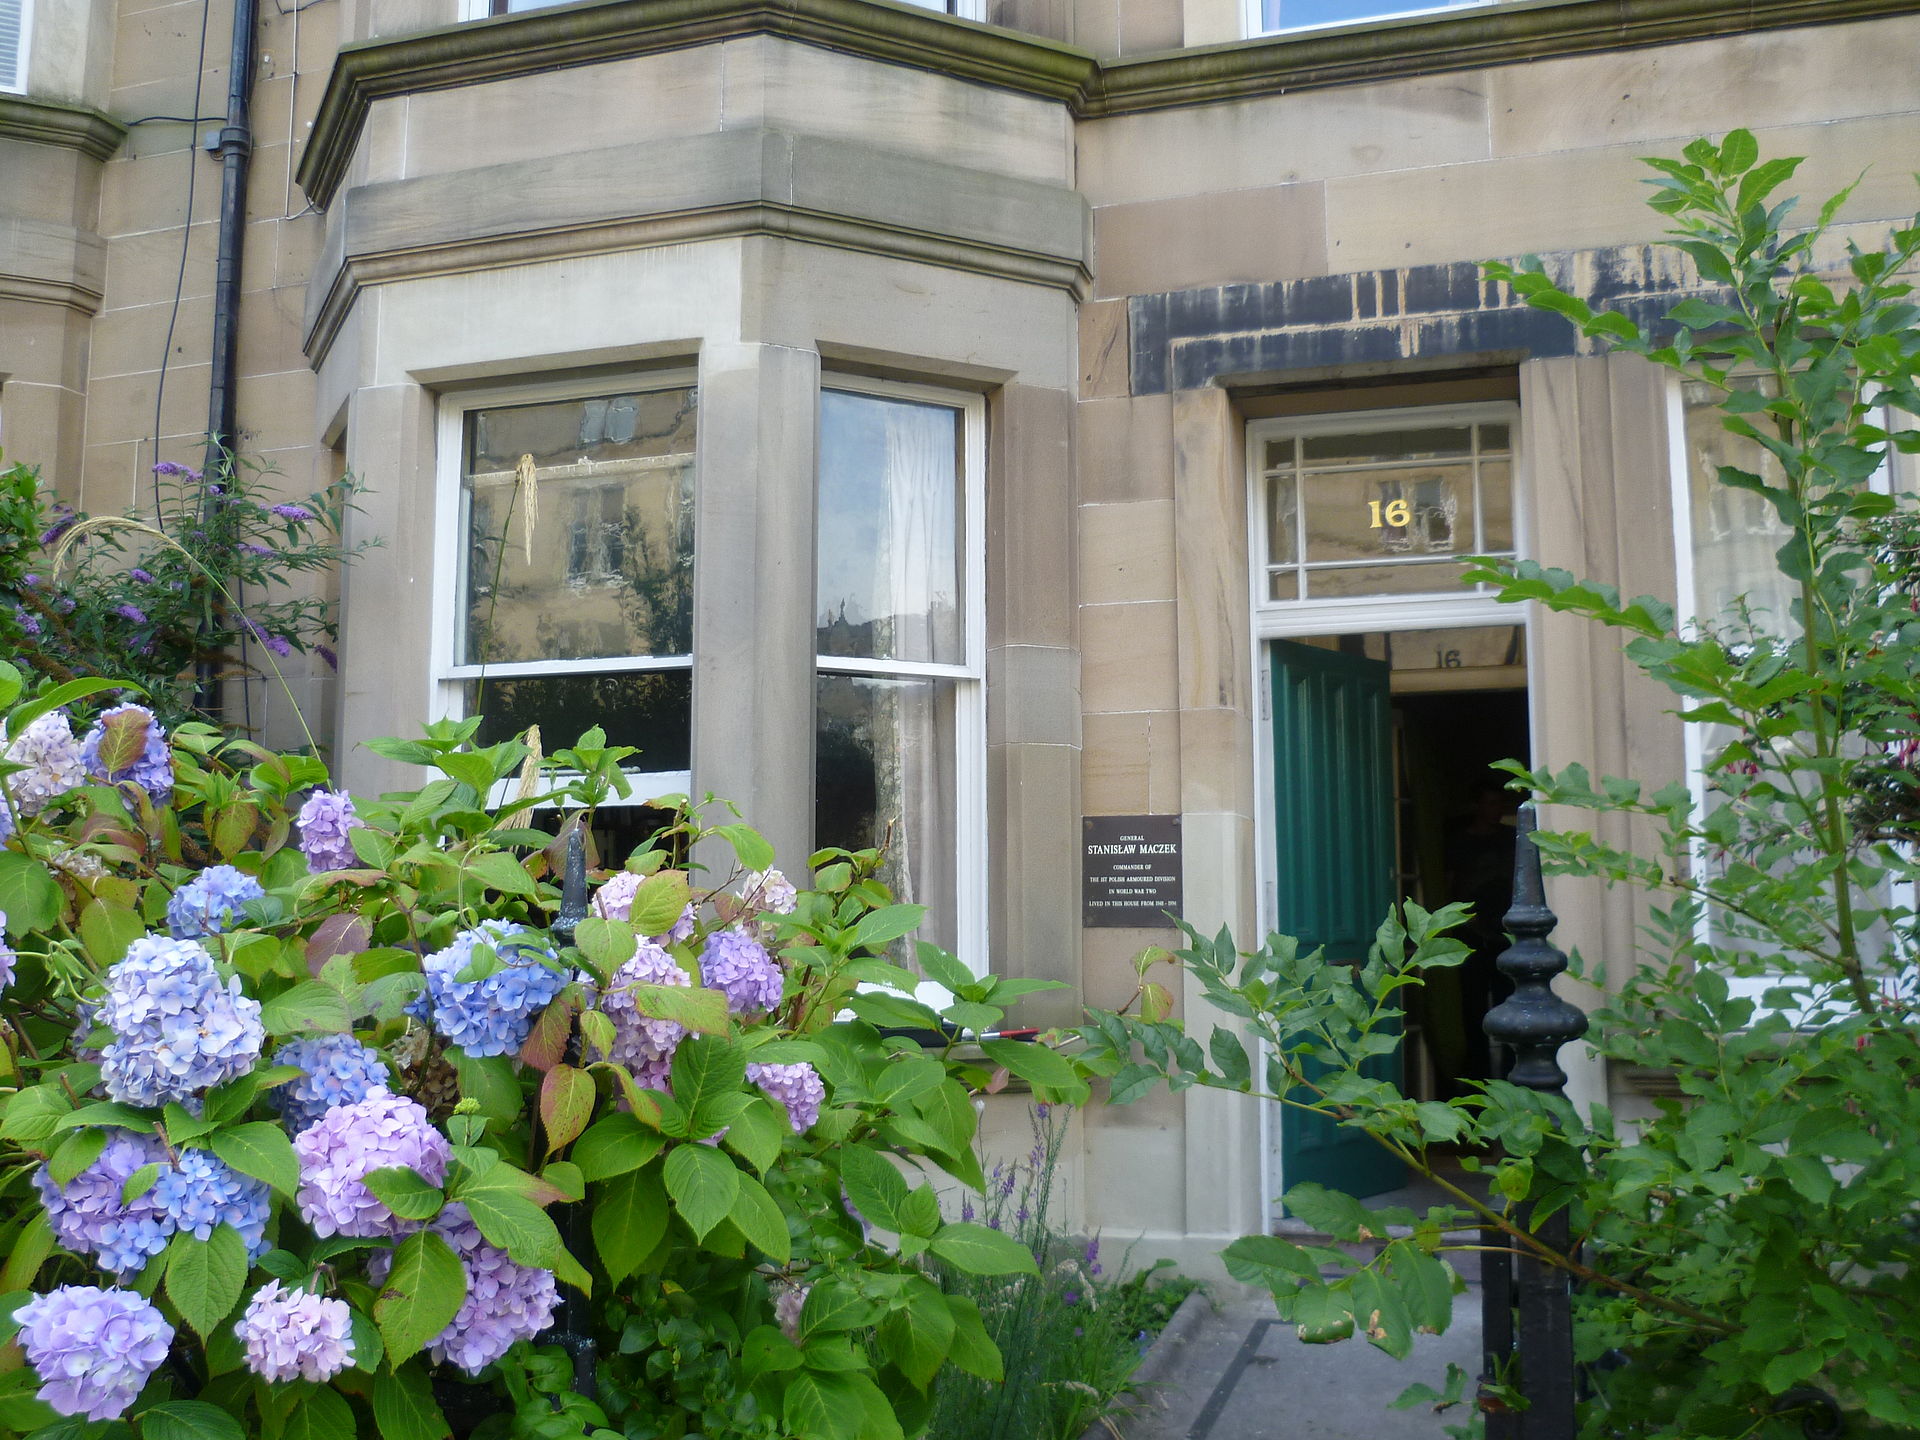 Dom rodziny Maczków przy Arden Str. 18 w Edynburgu, domena publiczna